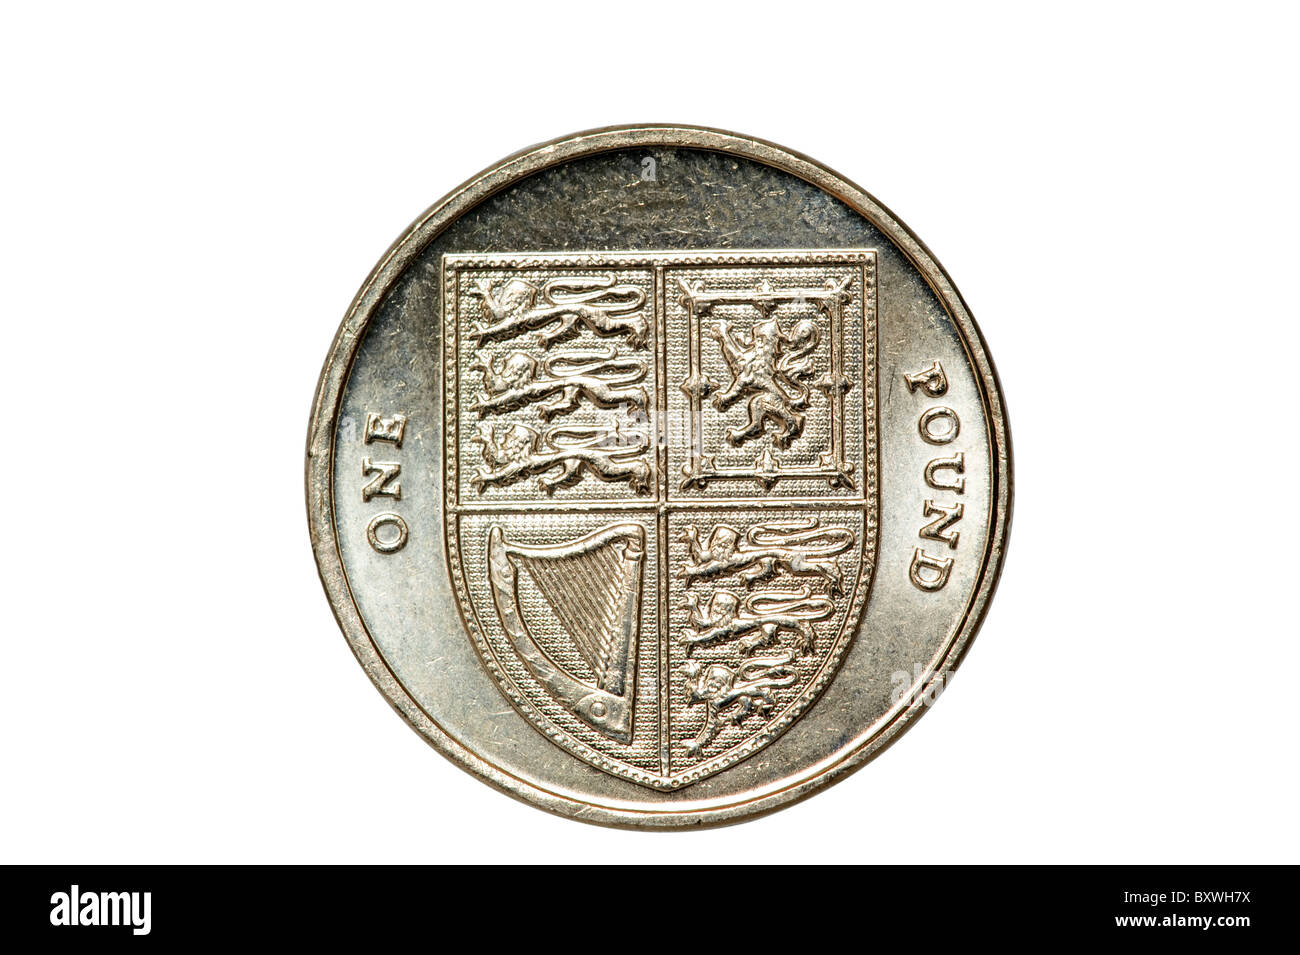 Close up of a 2009 une livre sterling britannique de monnaie. Utilisez uniquement éditoriale Banque D'Images